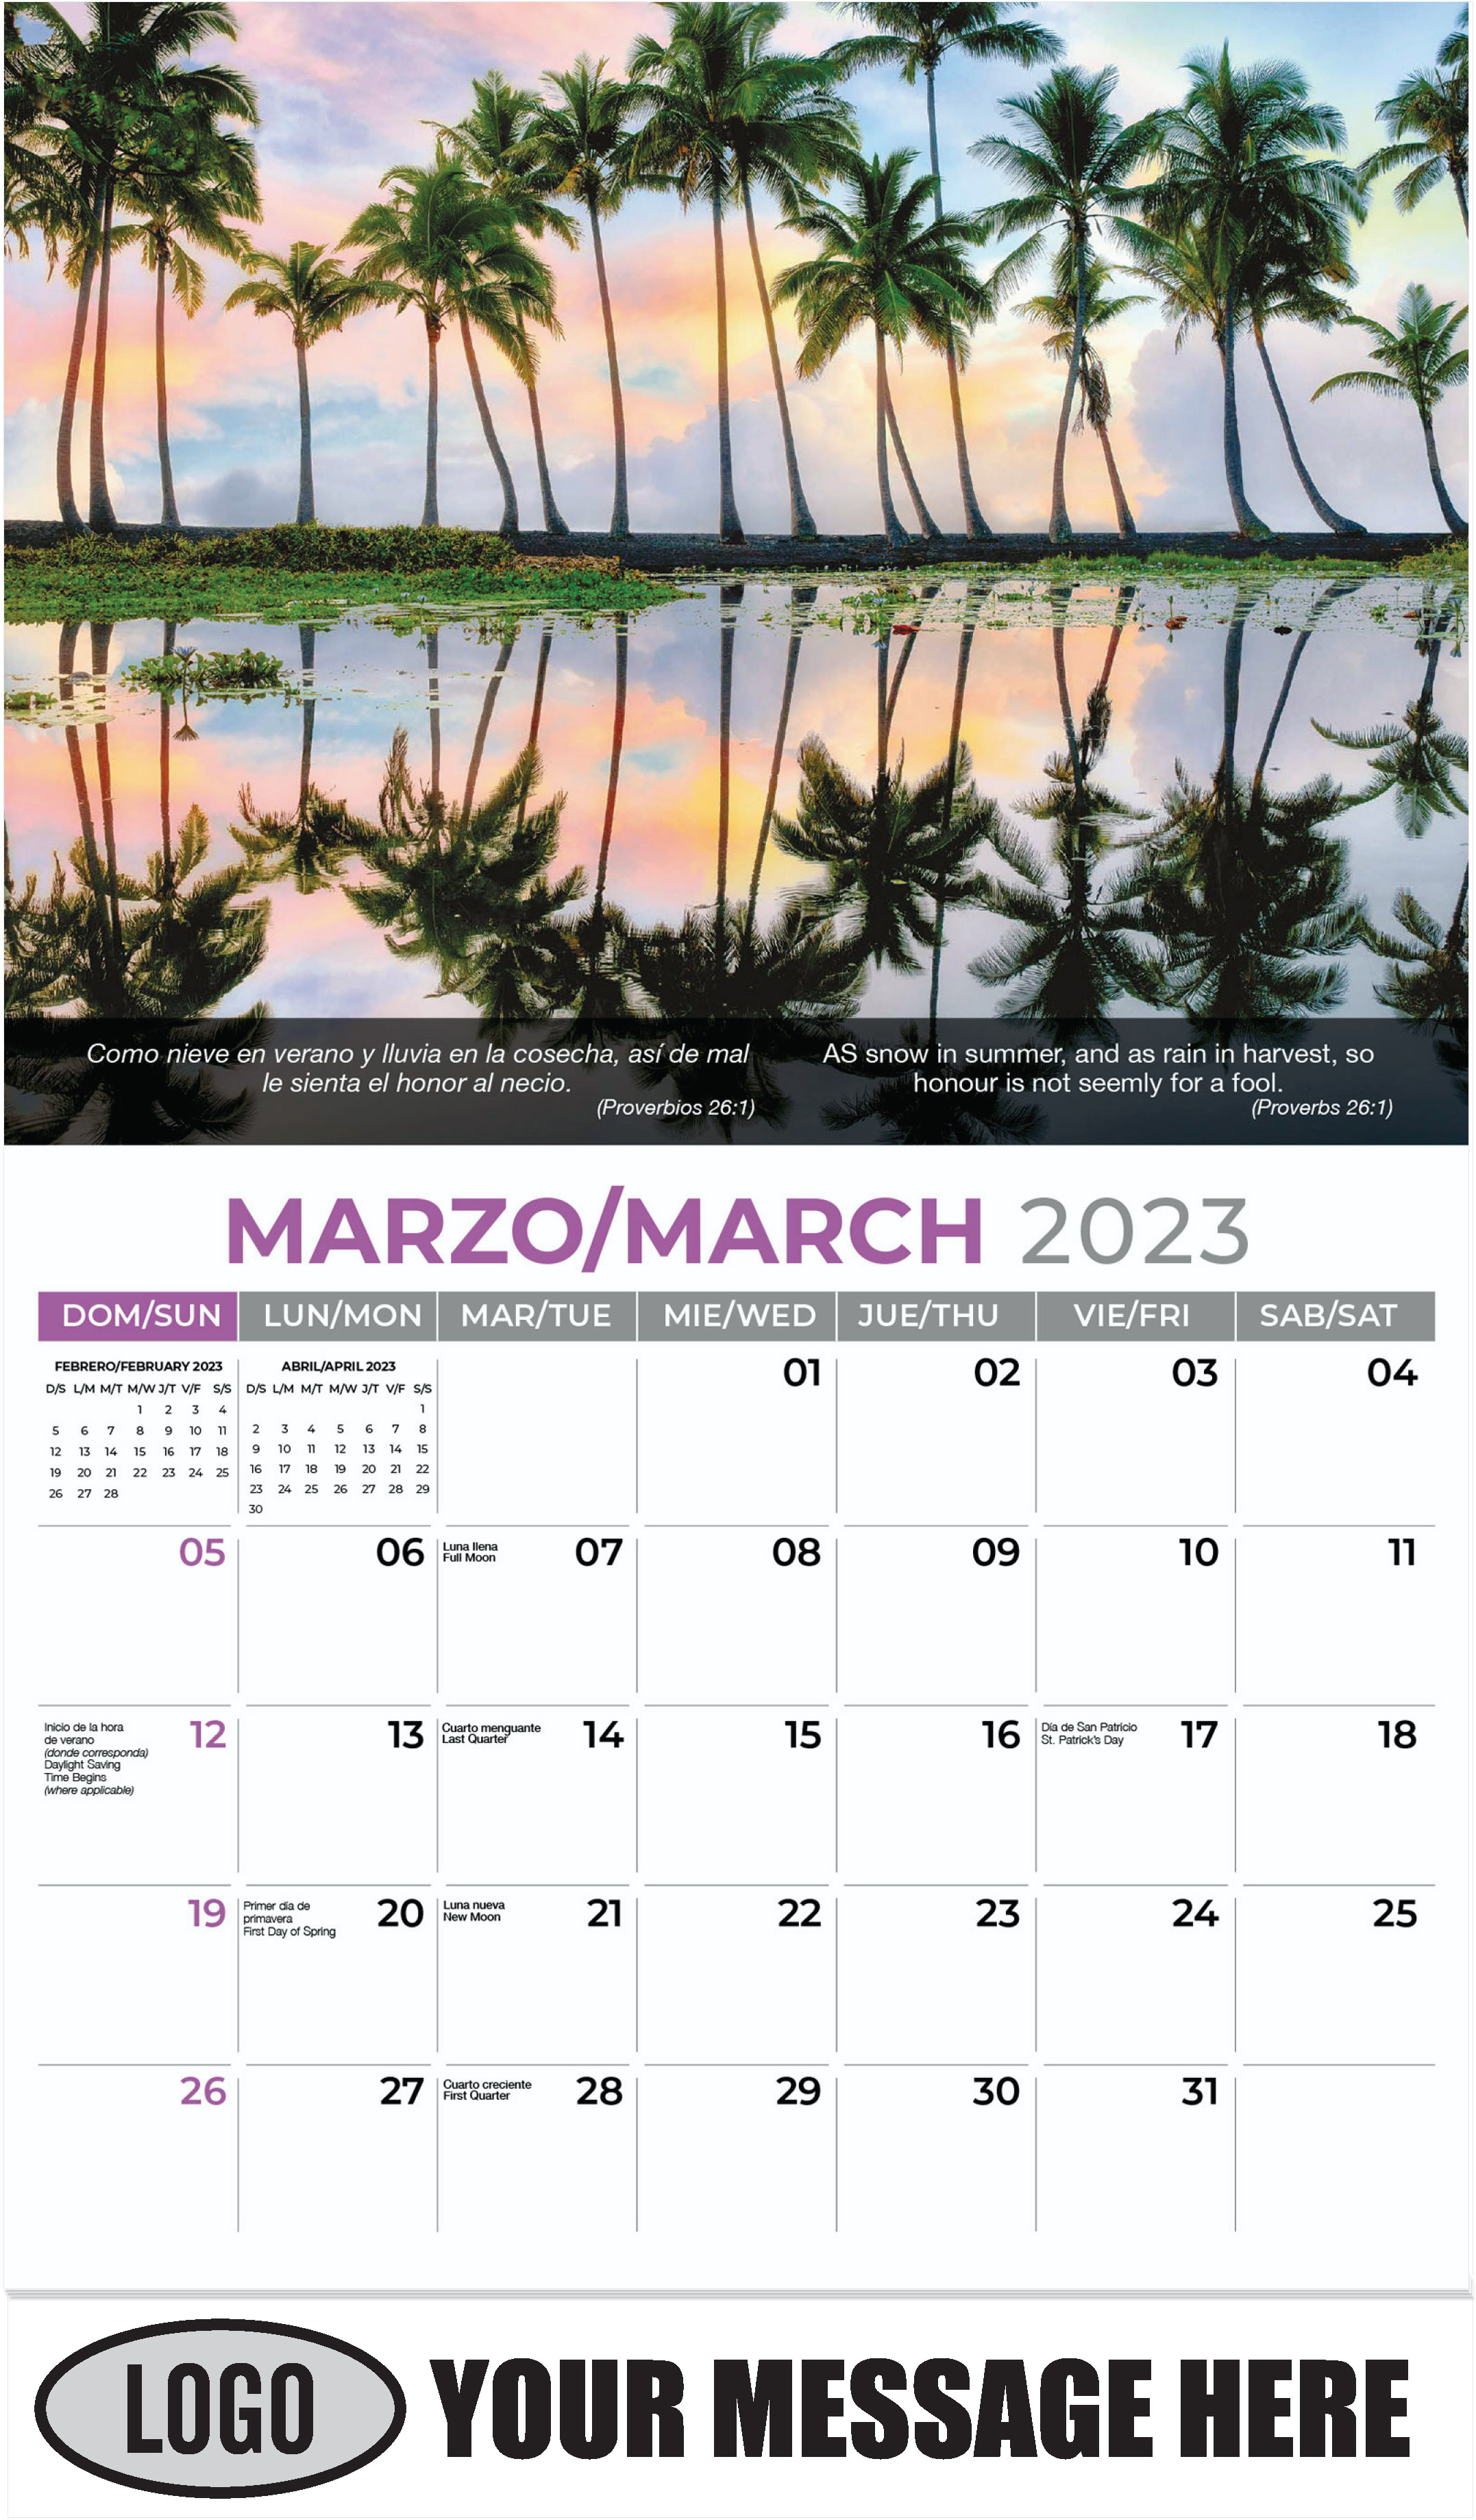 Punaluu Black Sand Beach, Hawaii - March - Faith-Passages-Eng-Sp 2023 Promotional Calendar